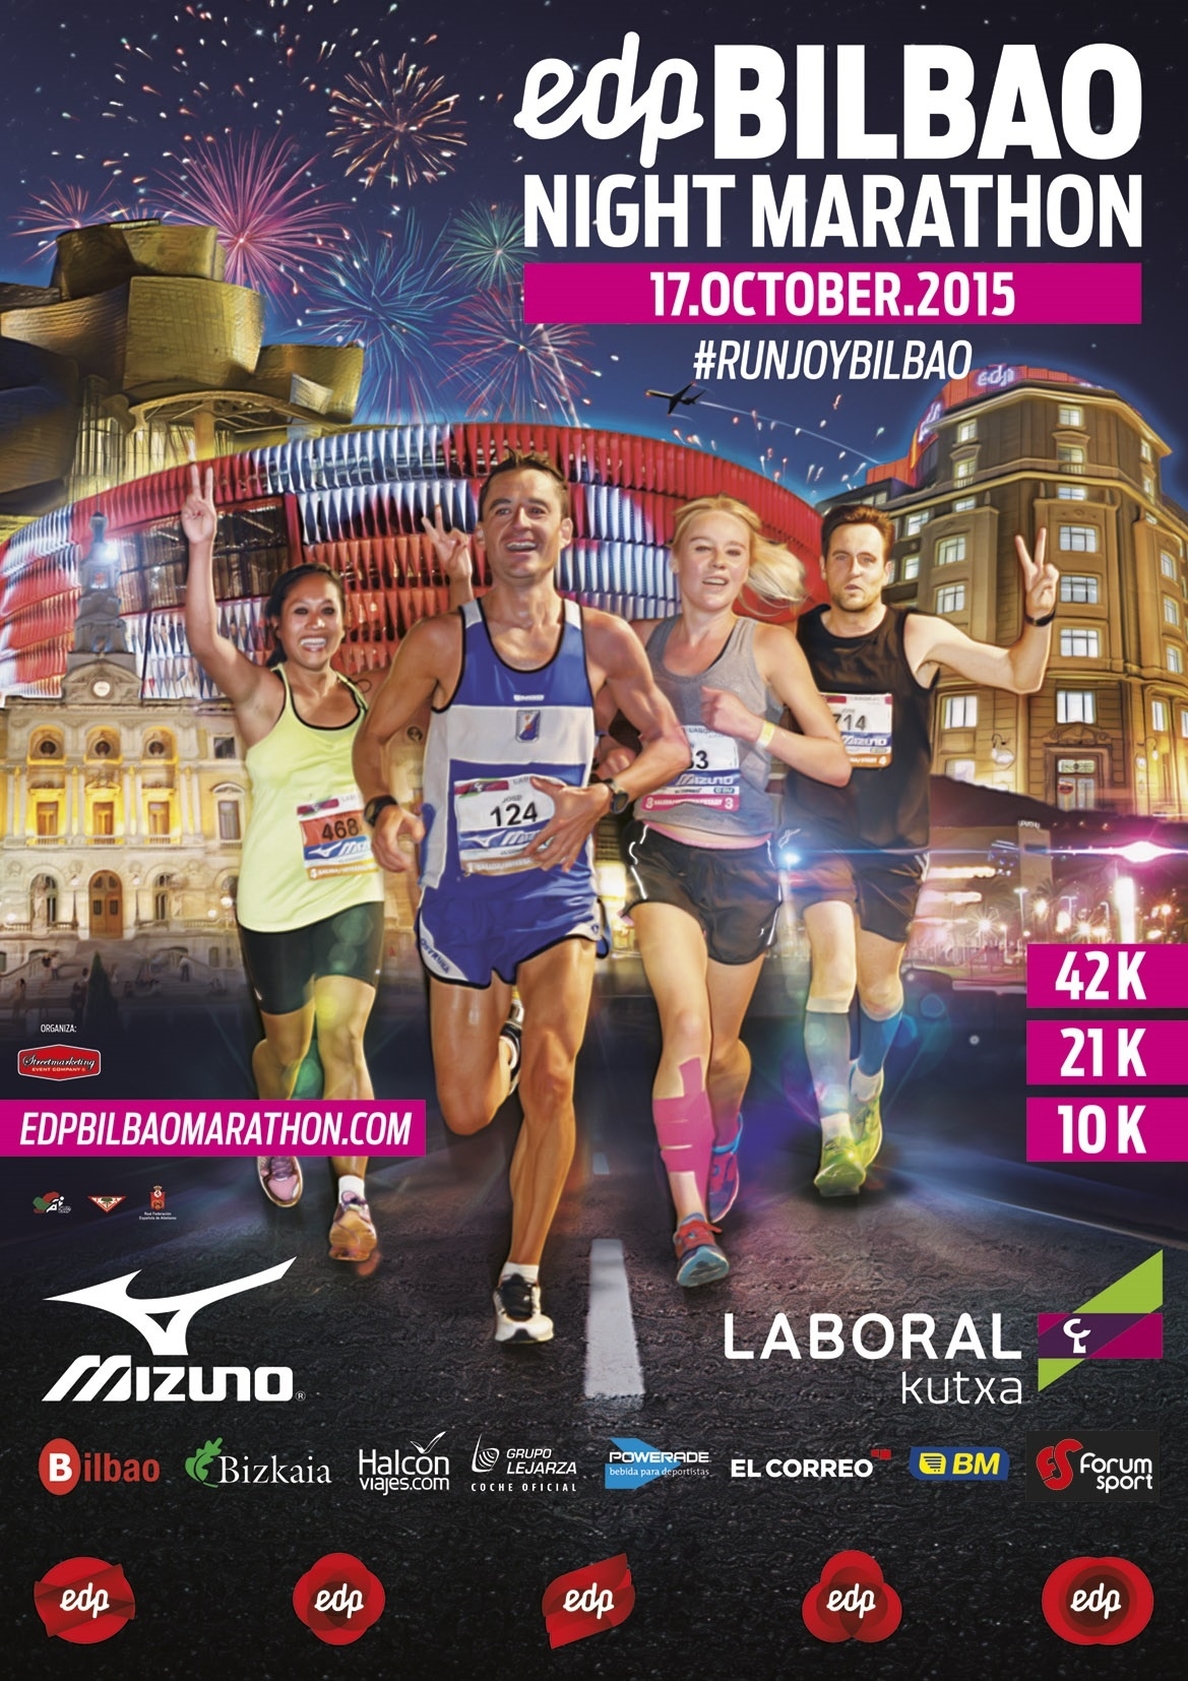 EDP será el patrocinador oficial del EDP Bilbao Night Marathon